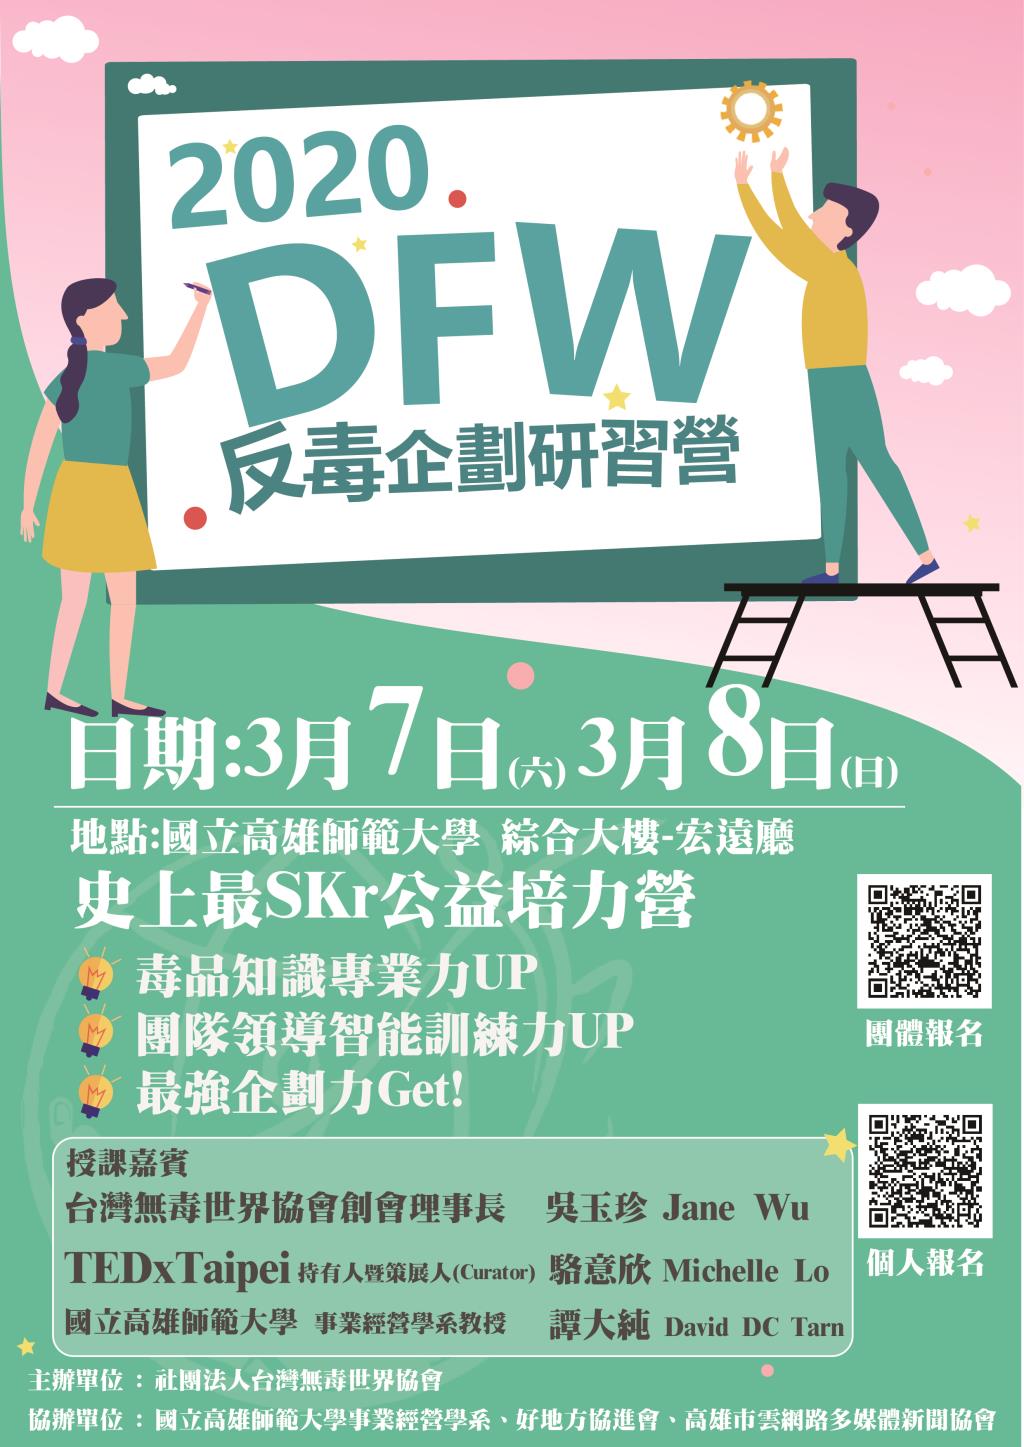 社團法人台灣無毒世界協會辦理「2020 DFW 反毒企劃研習營」